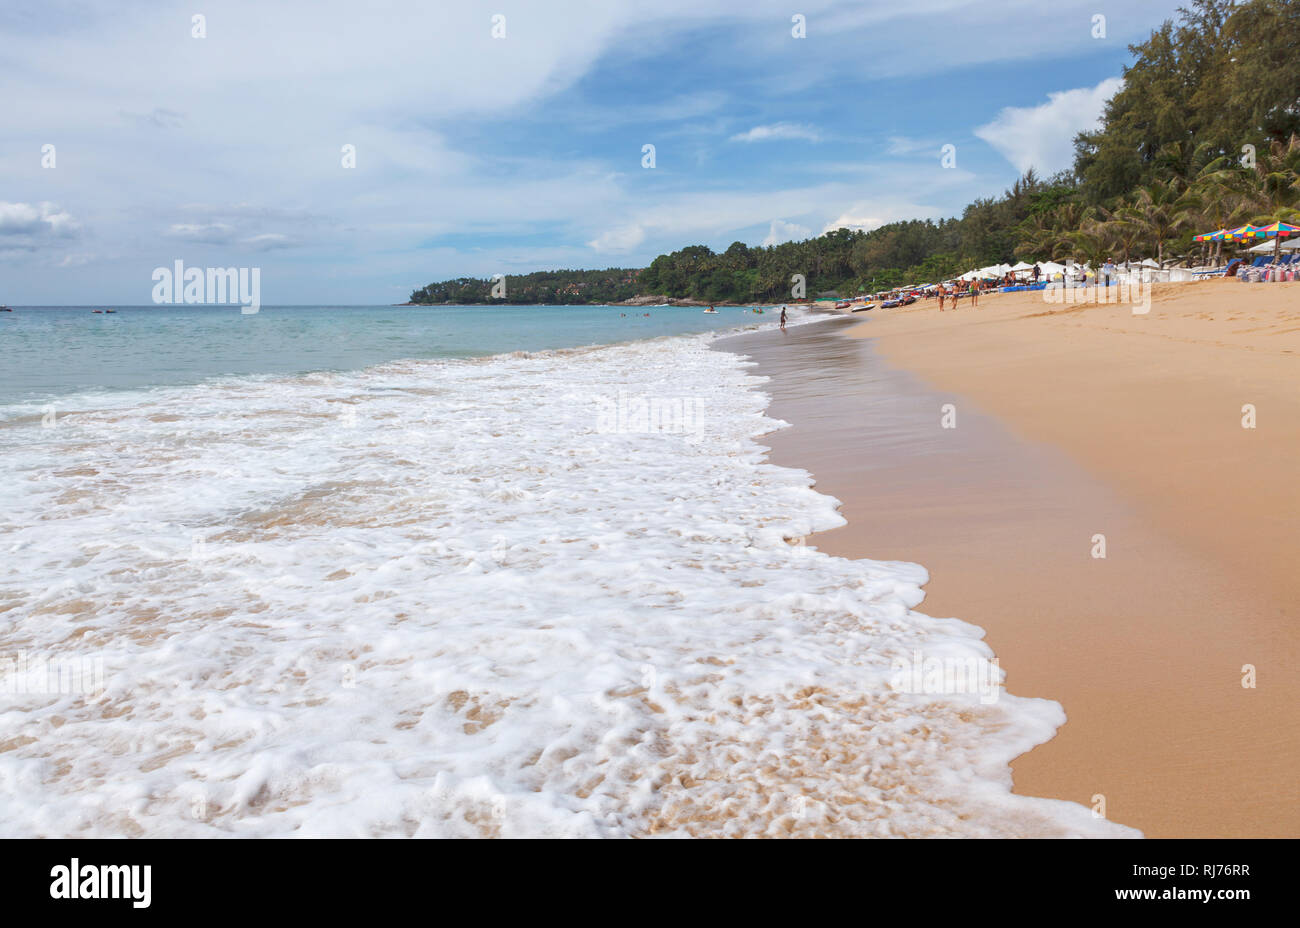 Brechenden Wellen am Strand der Sandstrand von tropischen Palmen gesäumten Strand von Surin, Westküste von Phuket, Thailand Stockfoto